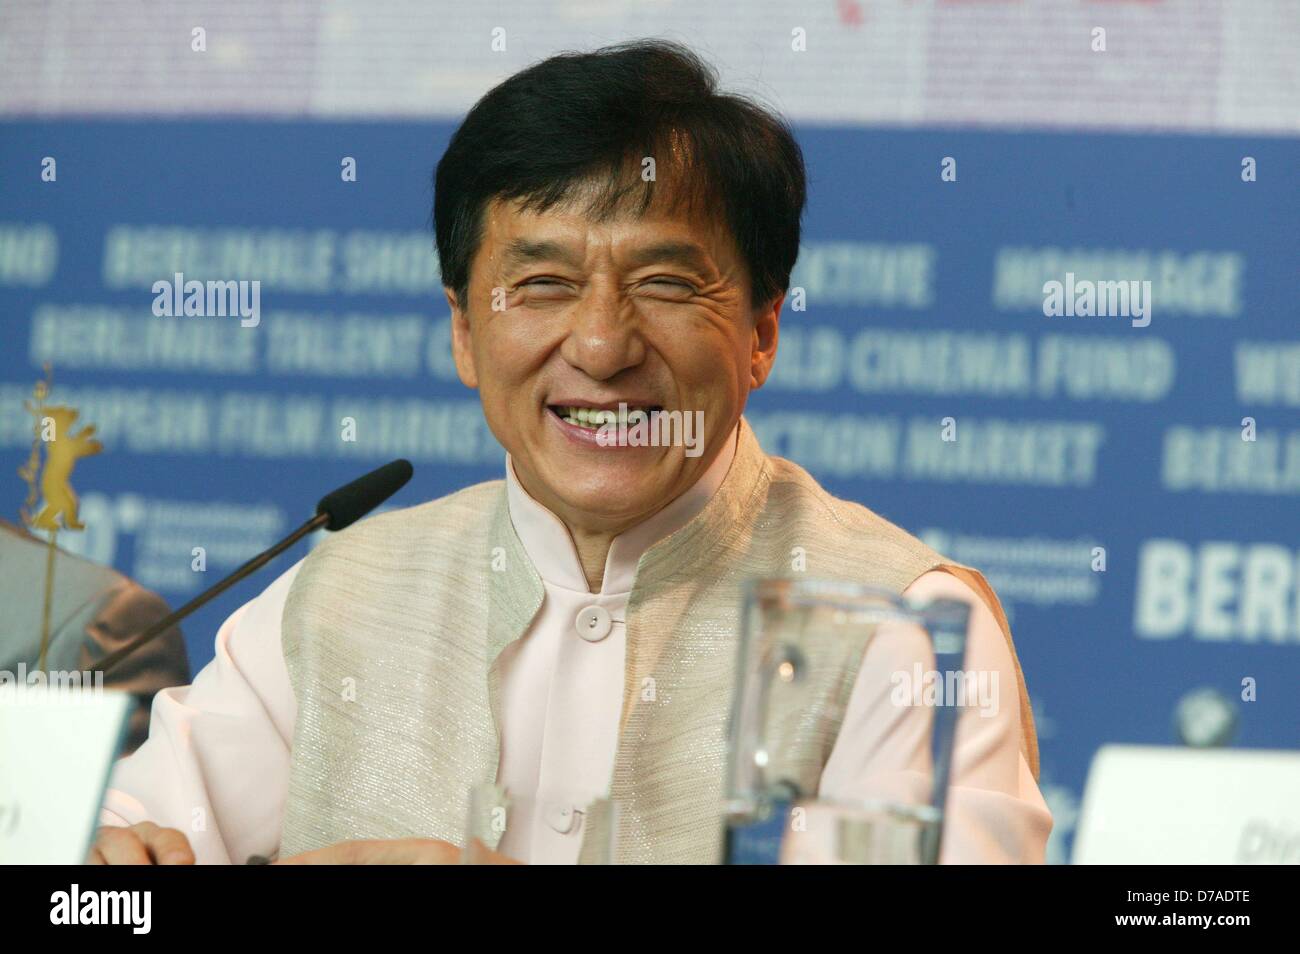 Jackie Chan bei der Photocall und der Pressekonferenz seines neuen Films "Little Big Soldier" während der Berlinale 2010 in Berlin am 16. Februar 2010. Stockfoto